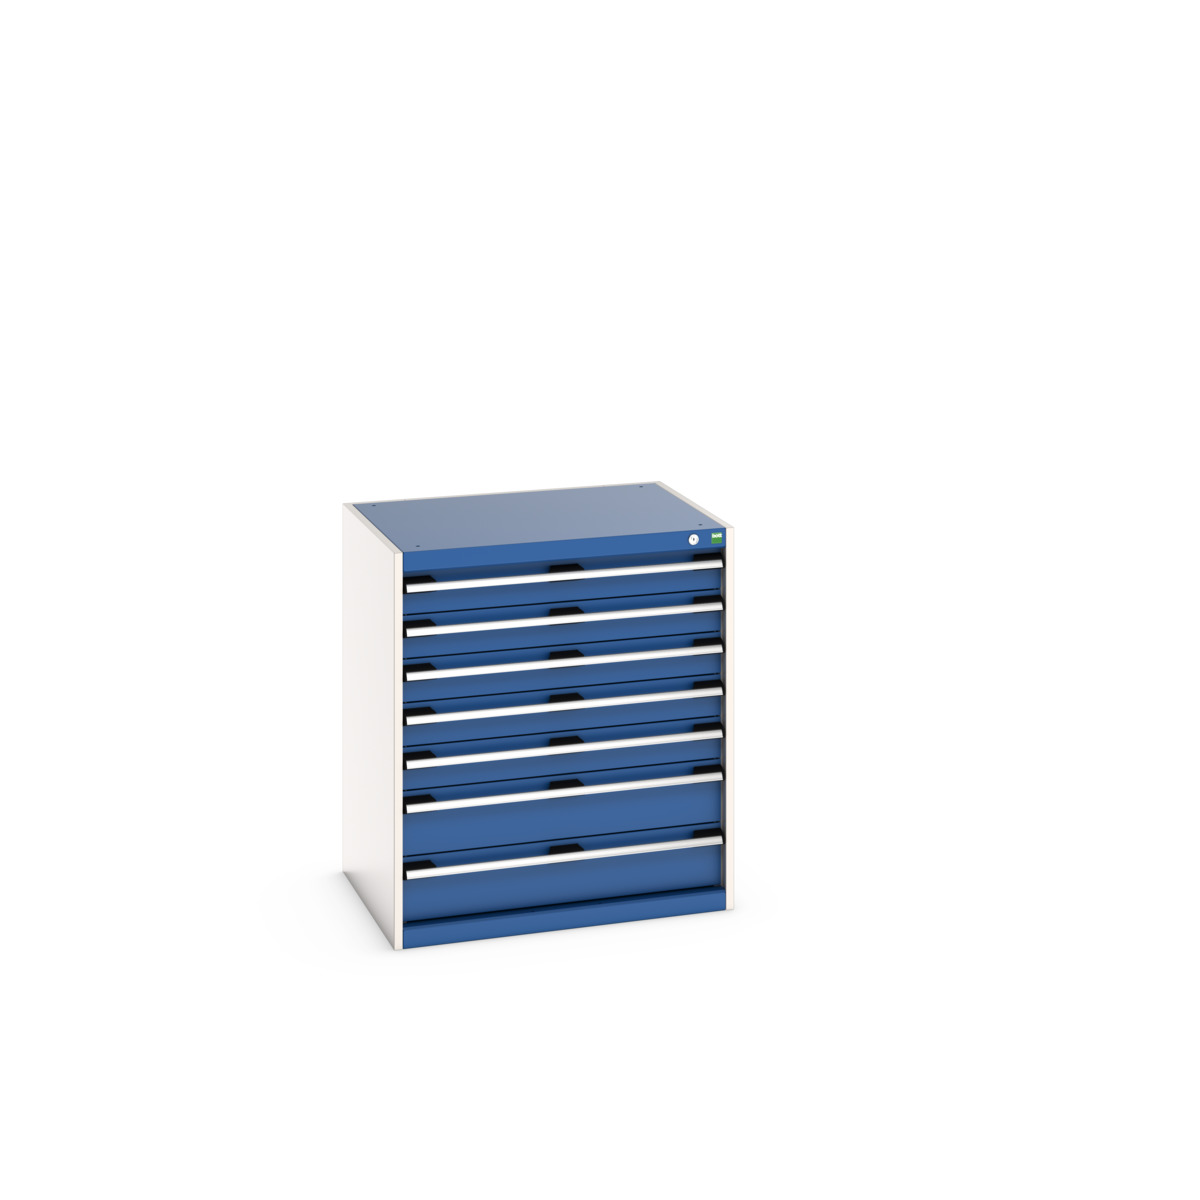 40020042.11V - cubio drawer cabinet